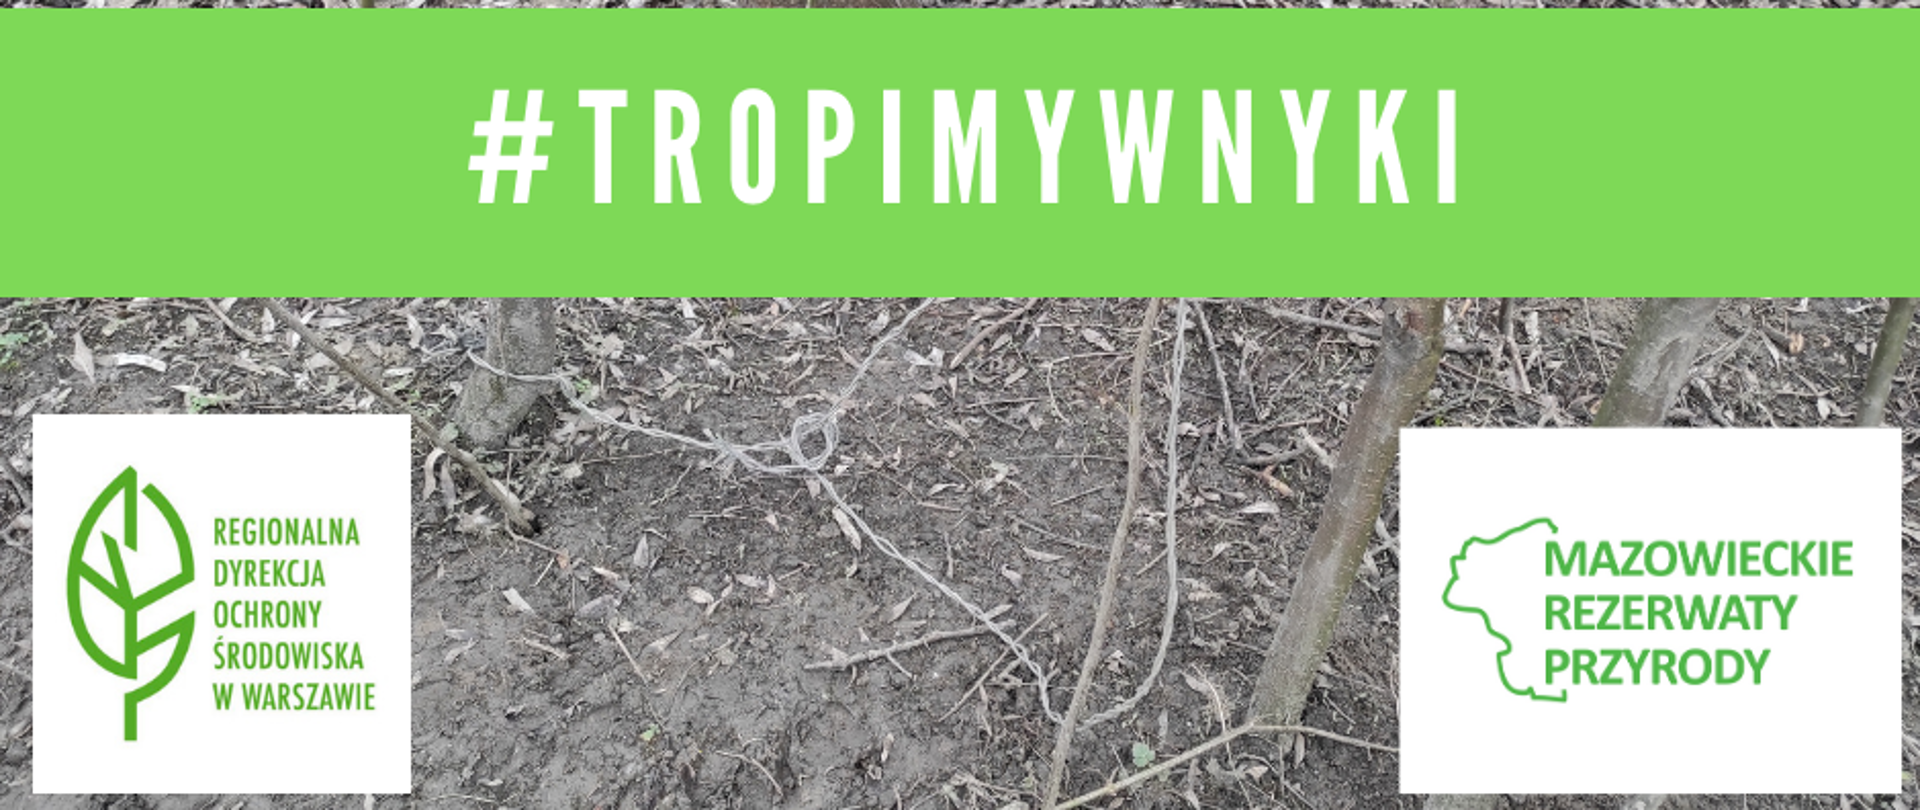 napis #Tropimywnyki na zielonym pasku, logo RDOŚ w Warszawie i projektu Mazowieckie rezerwaty przyrody na tle zdjęcia przedstawiającego wnyki 